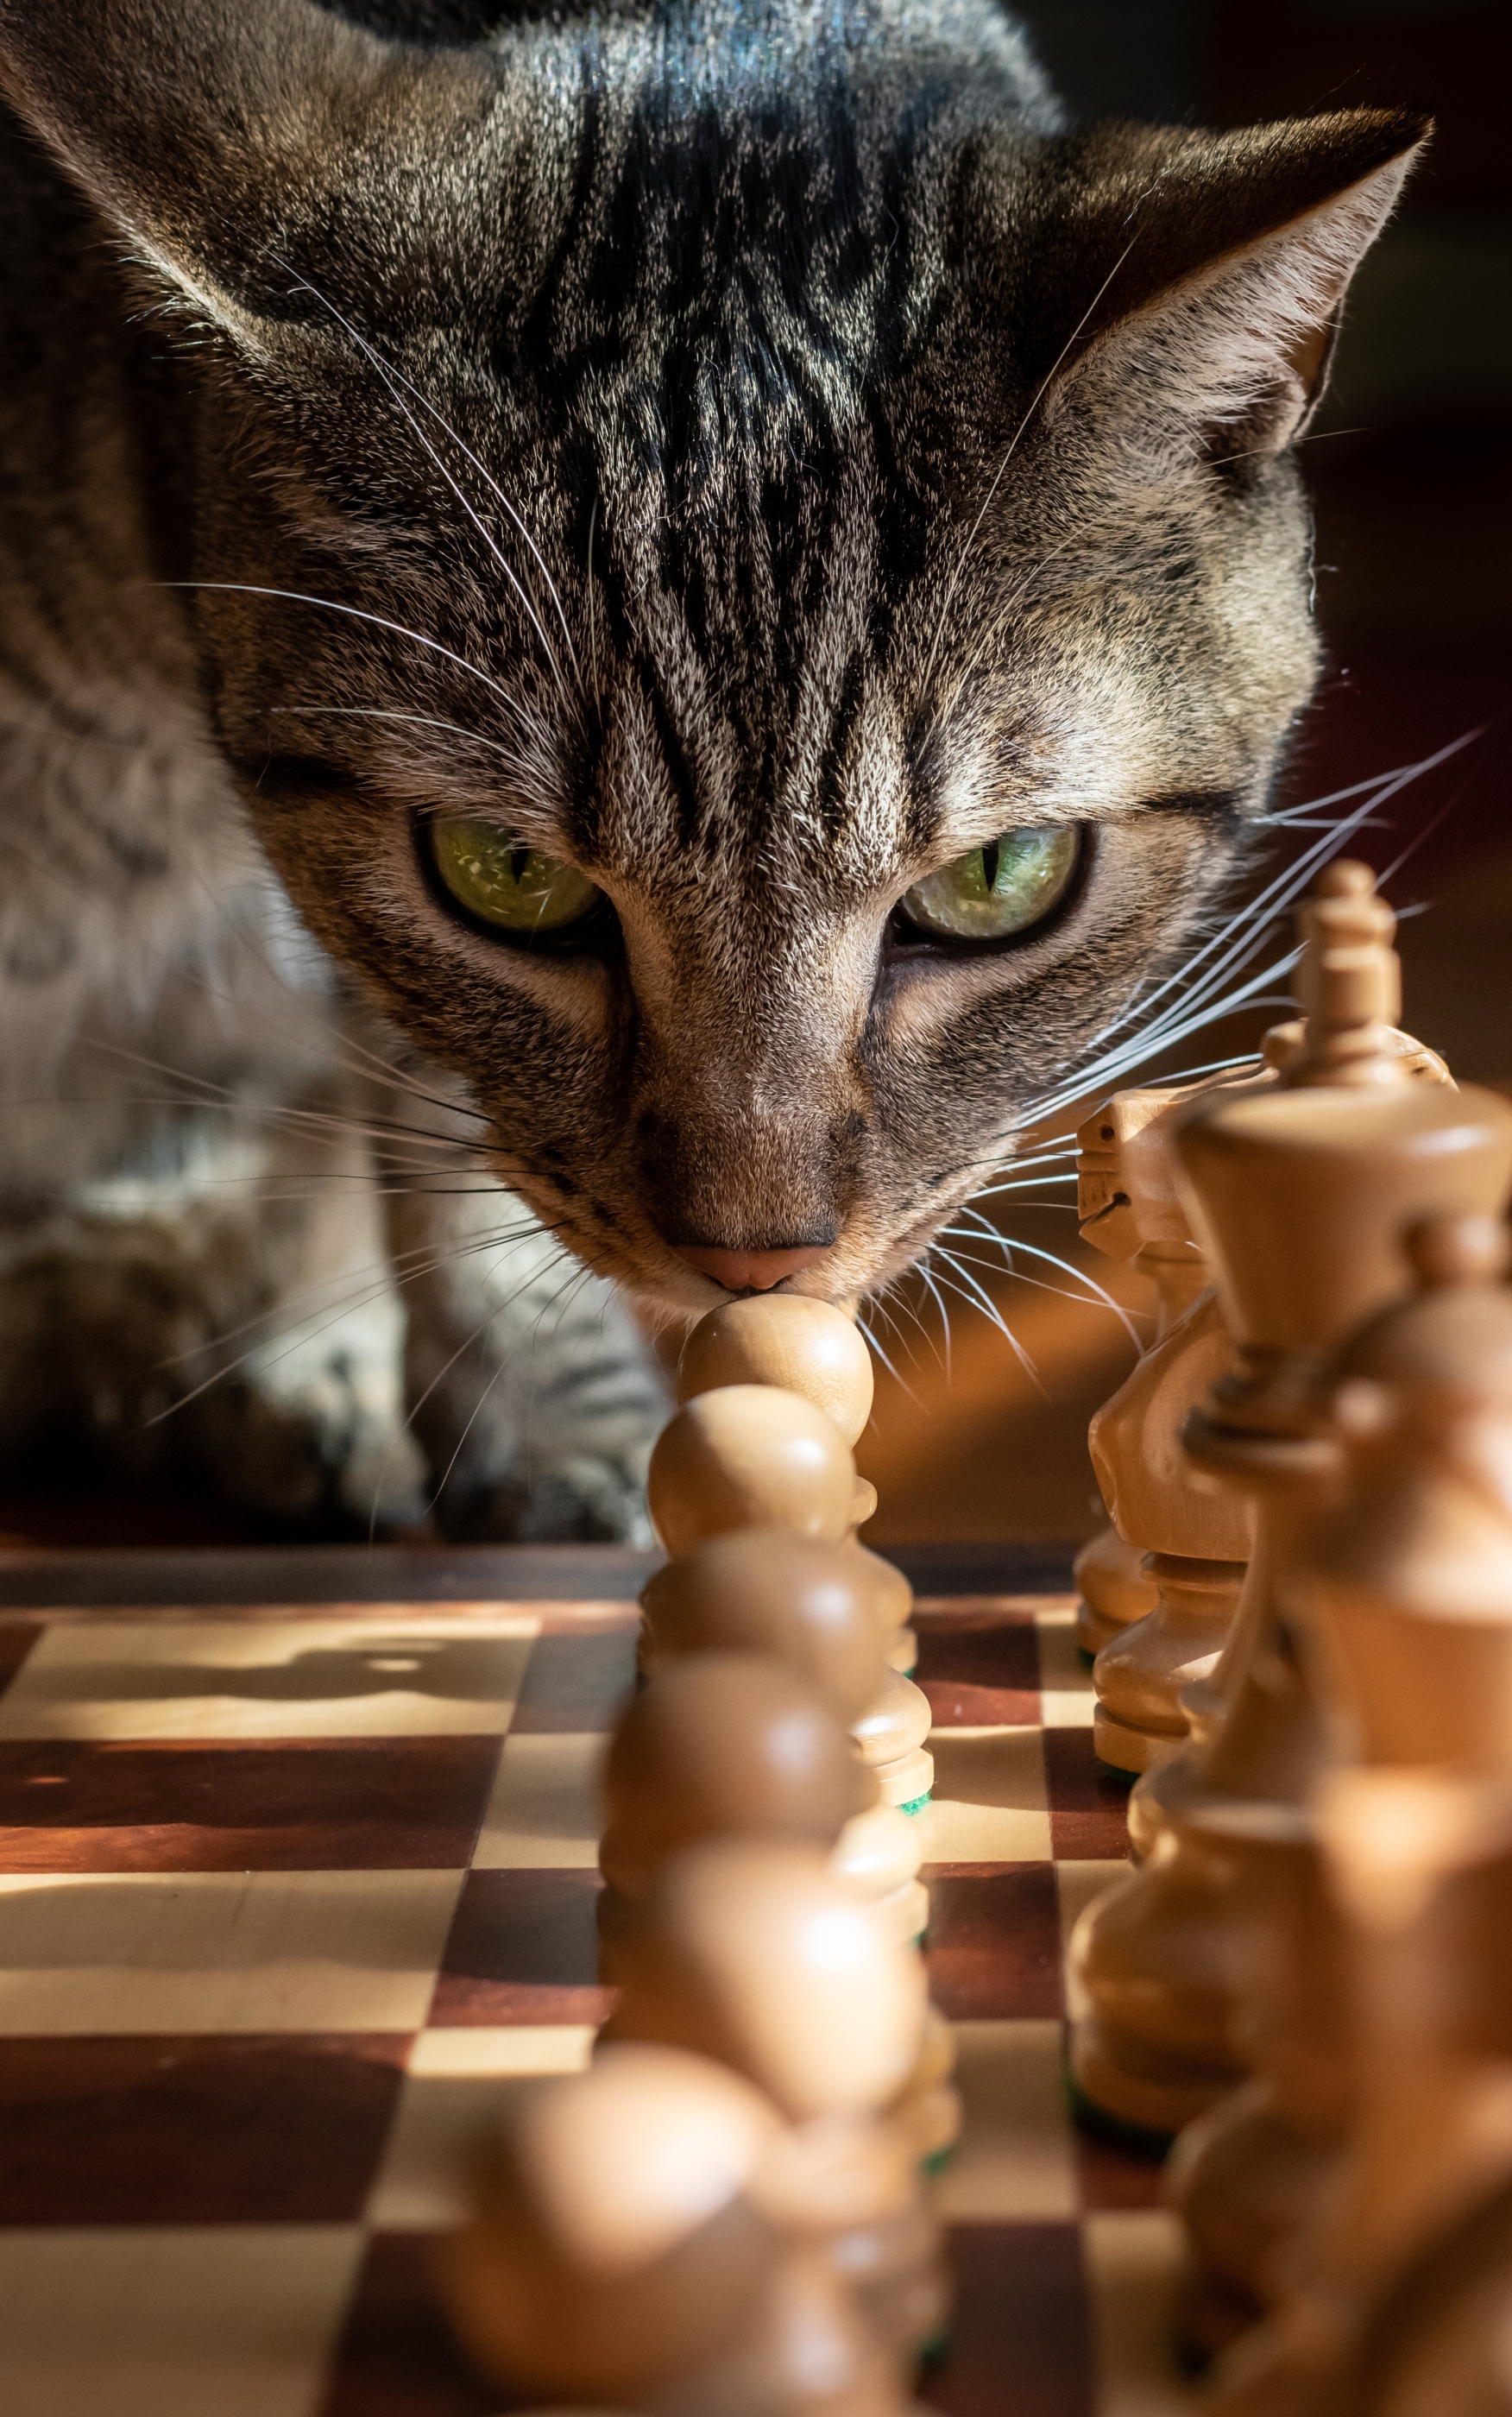 1189551 免費下載壁紙 动物, 猫, 棋, 国际象棋 屏保和圖片